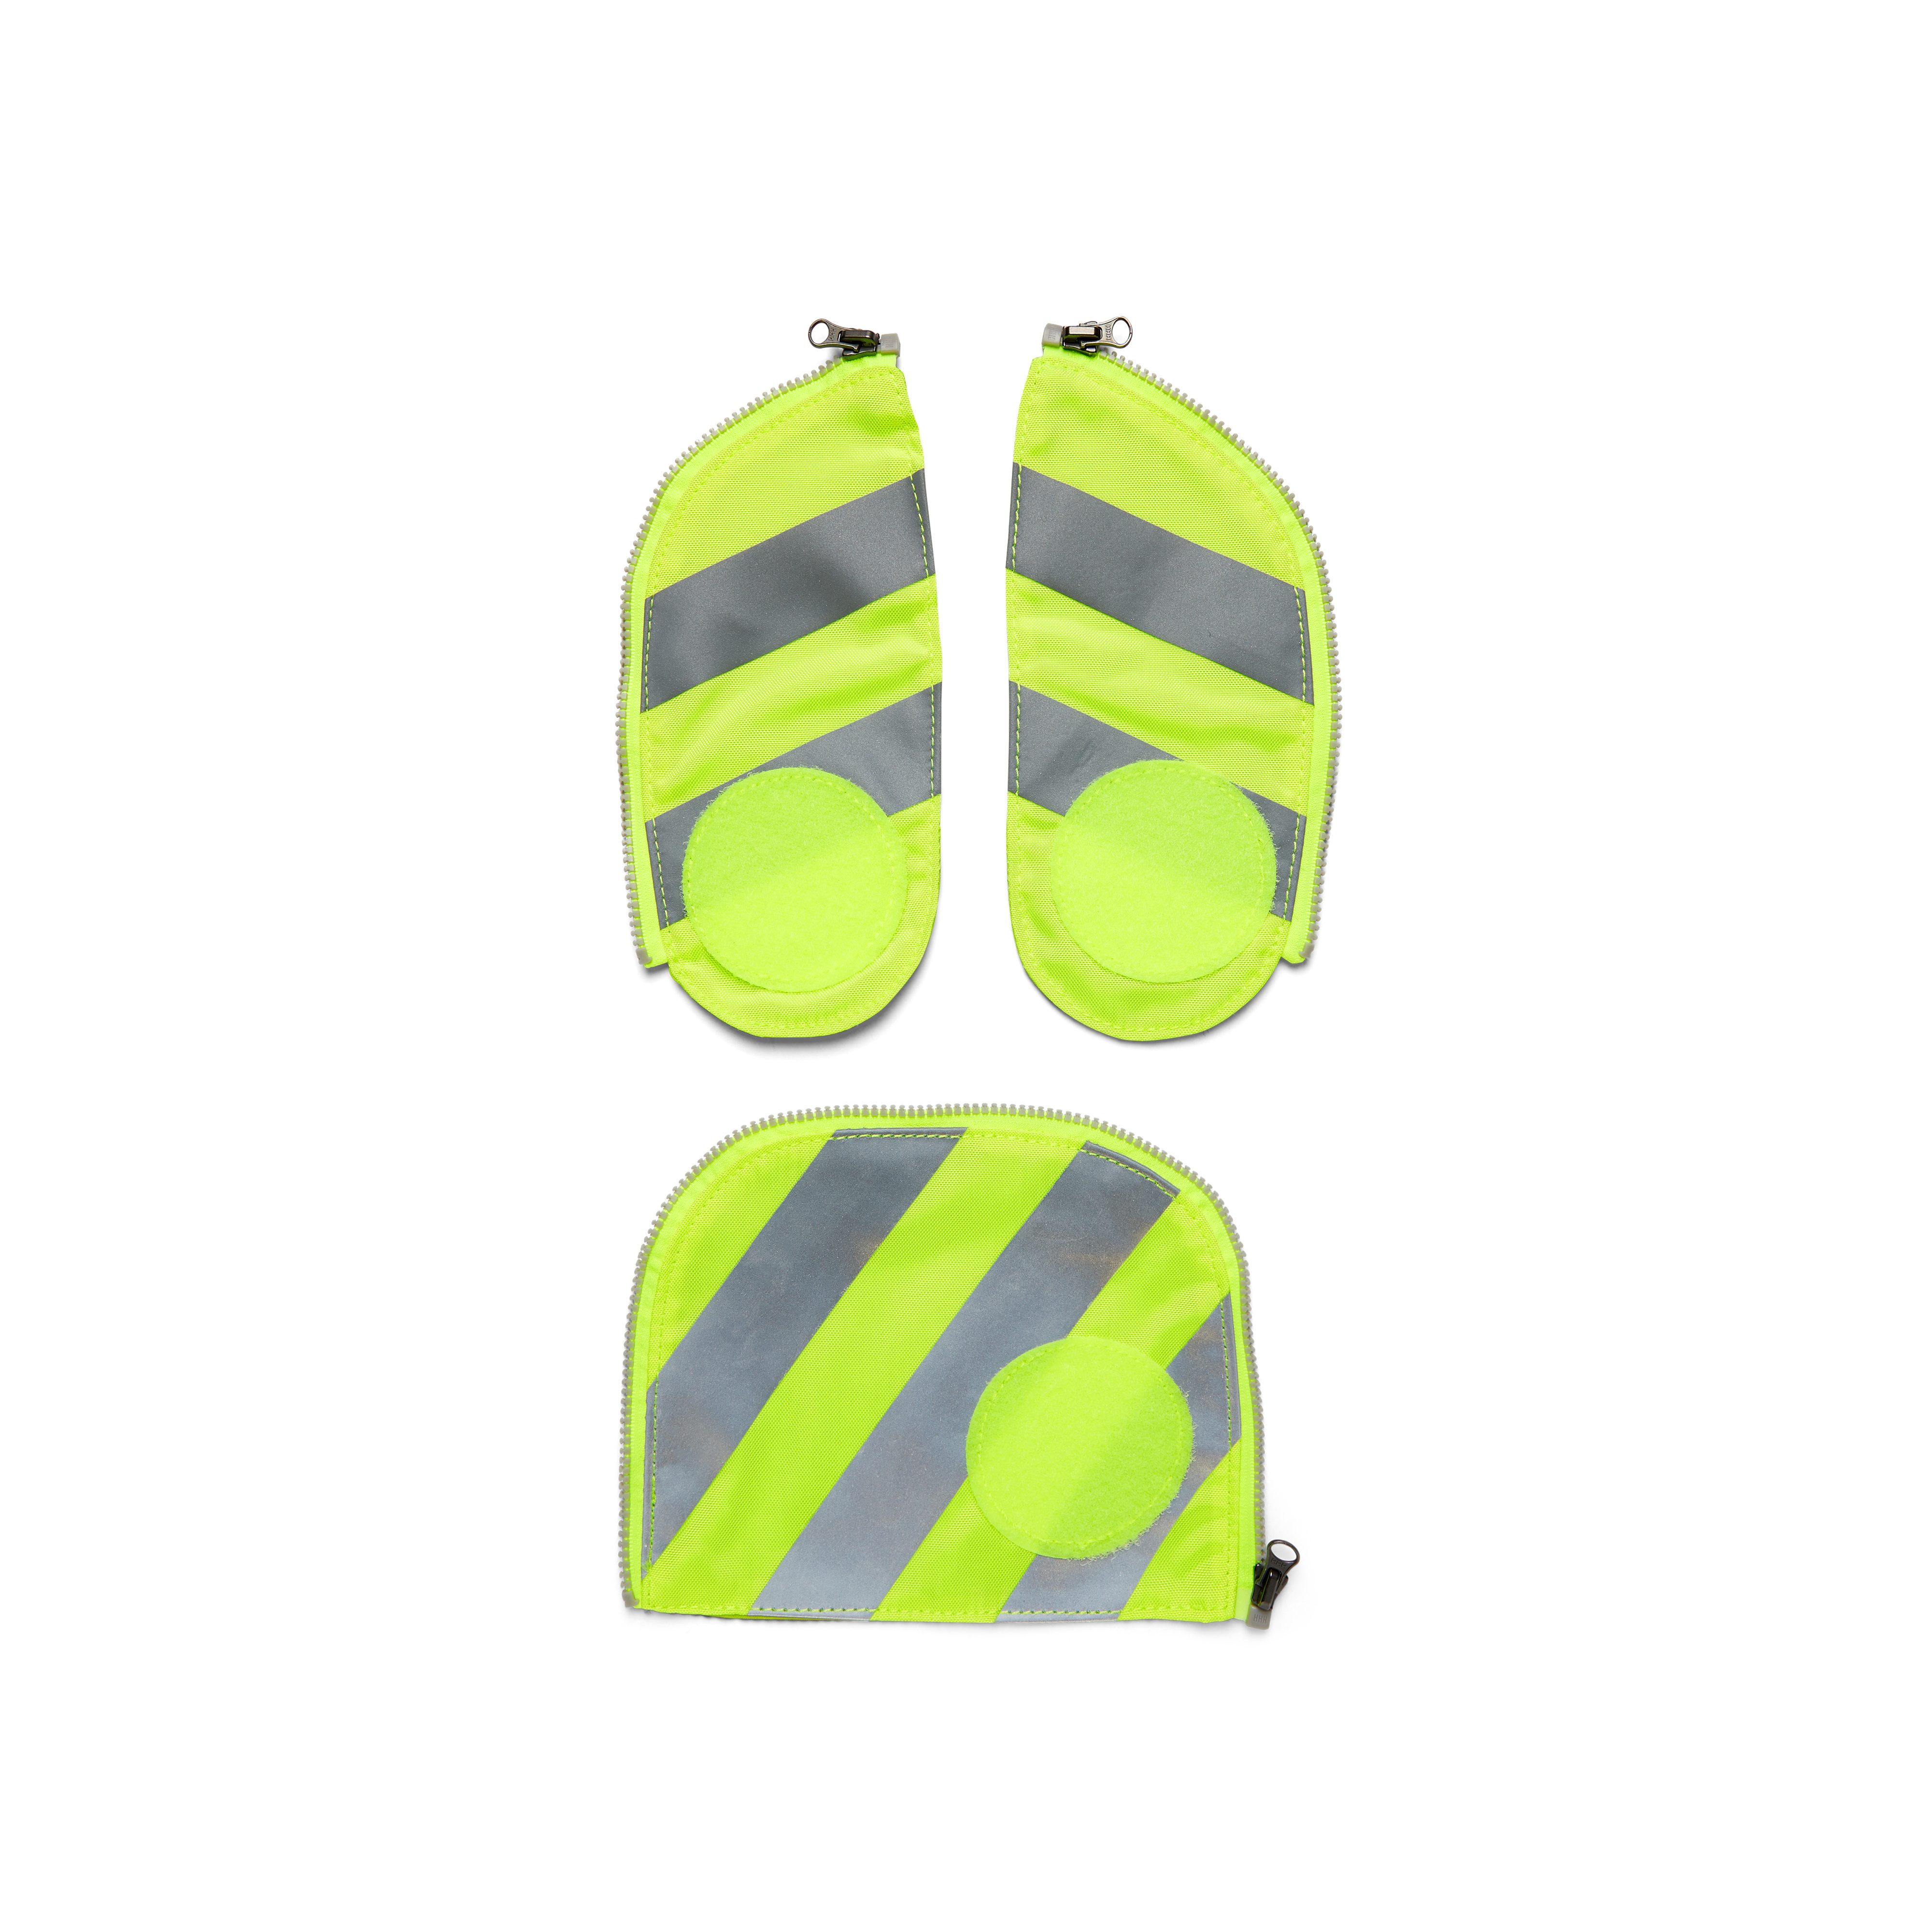 ergobag Schulranzen Fluo Zip-Set Sicherheitsset mit Reflektorstreifen, für alle Schultaschenmodelle ab 2019 002-103 Gelb